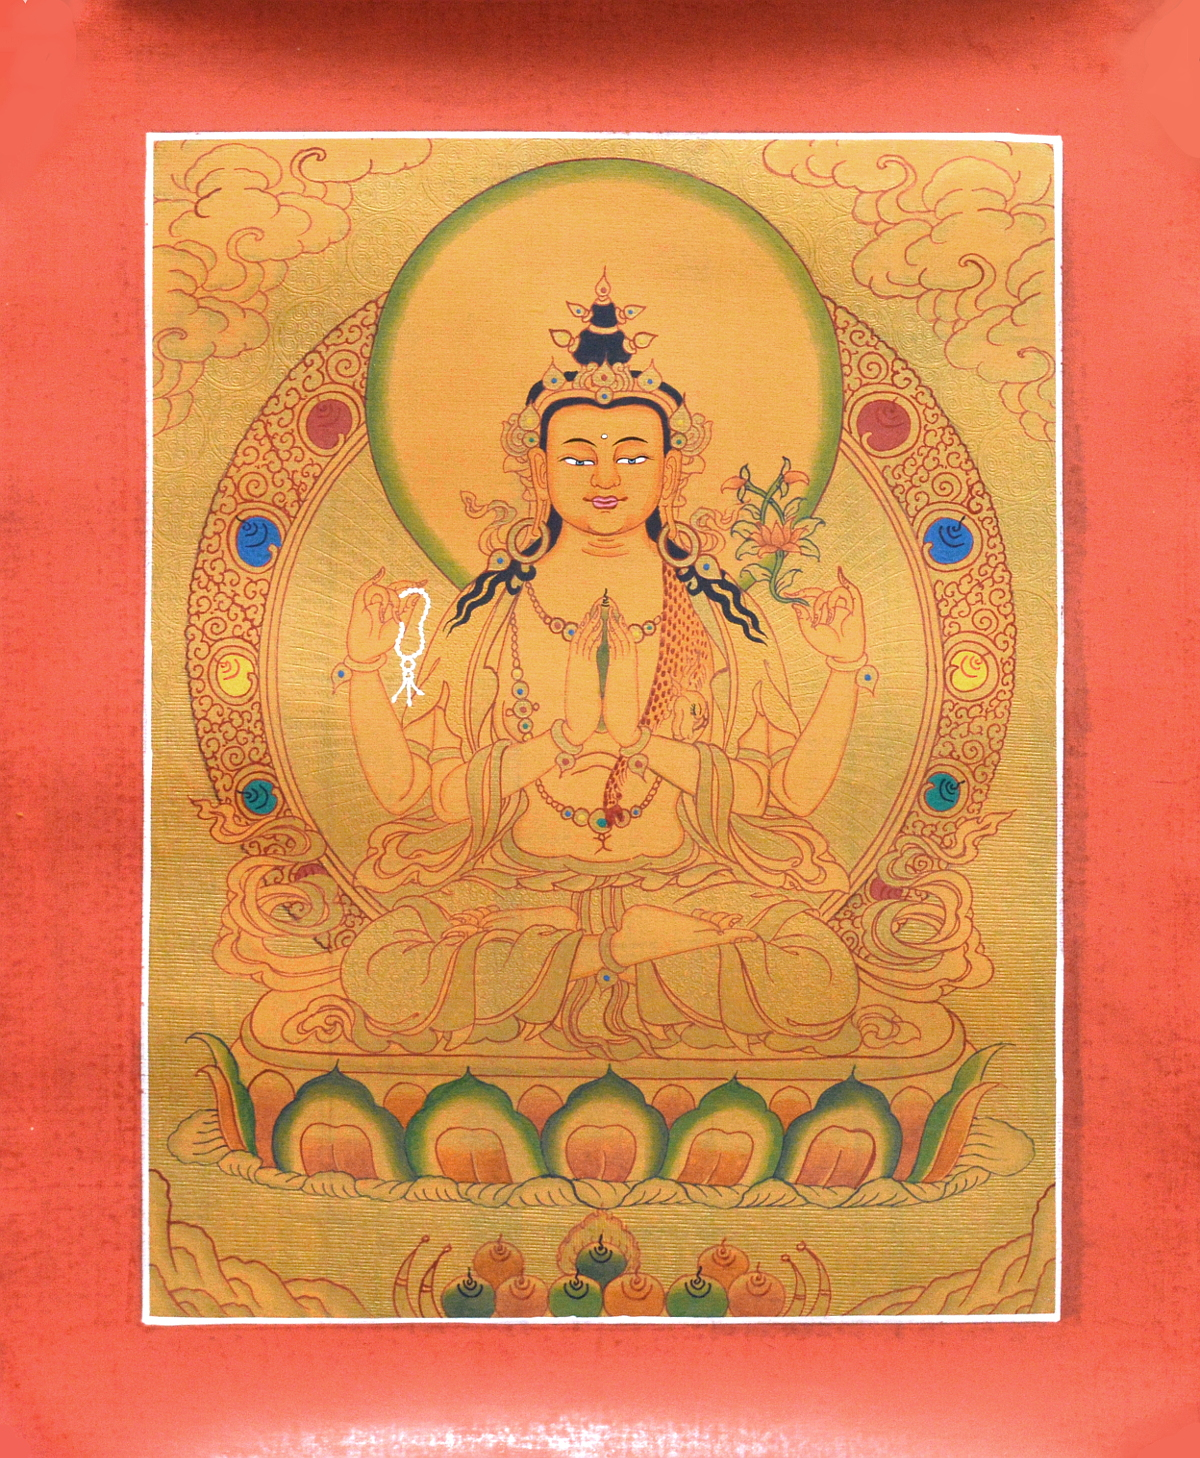 Тханка рисованная Авалокитешвара (29,5 х 36 см) (с использованием золота)